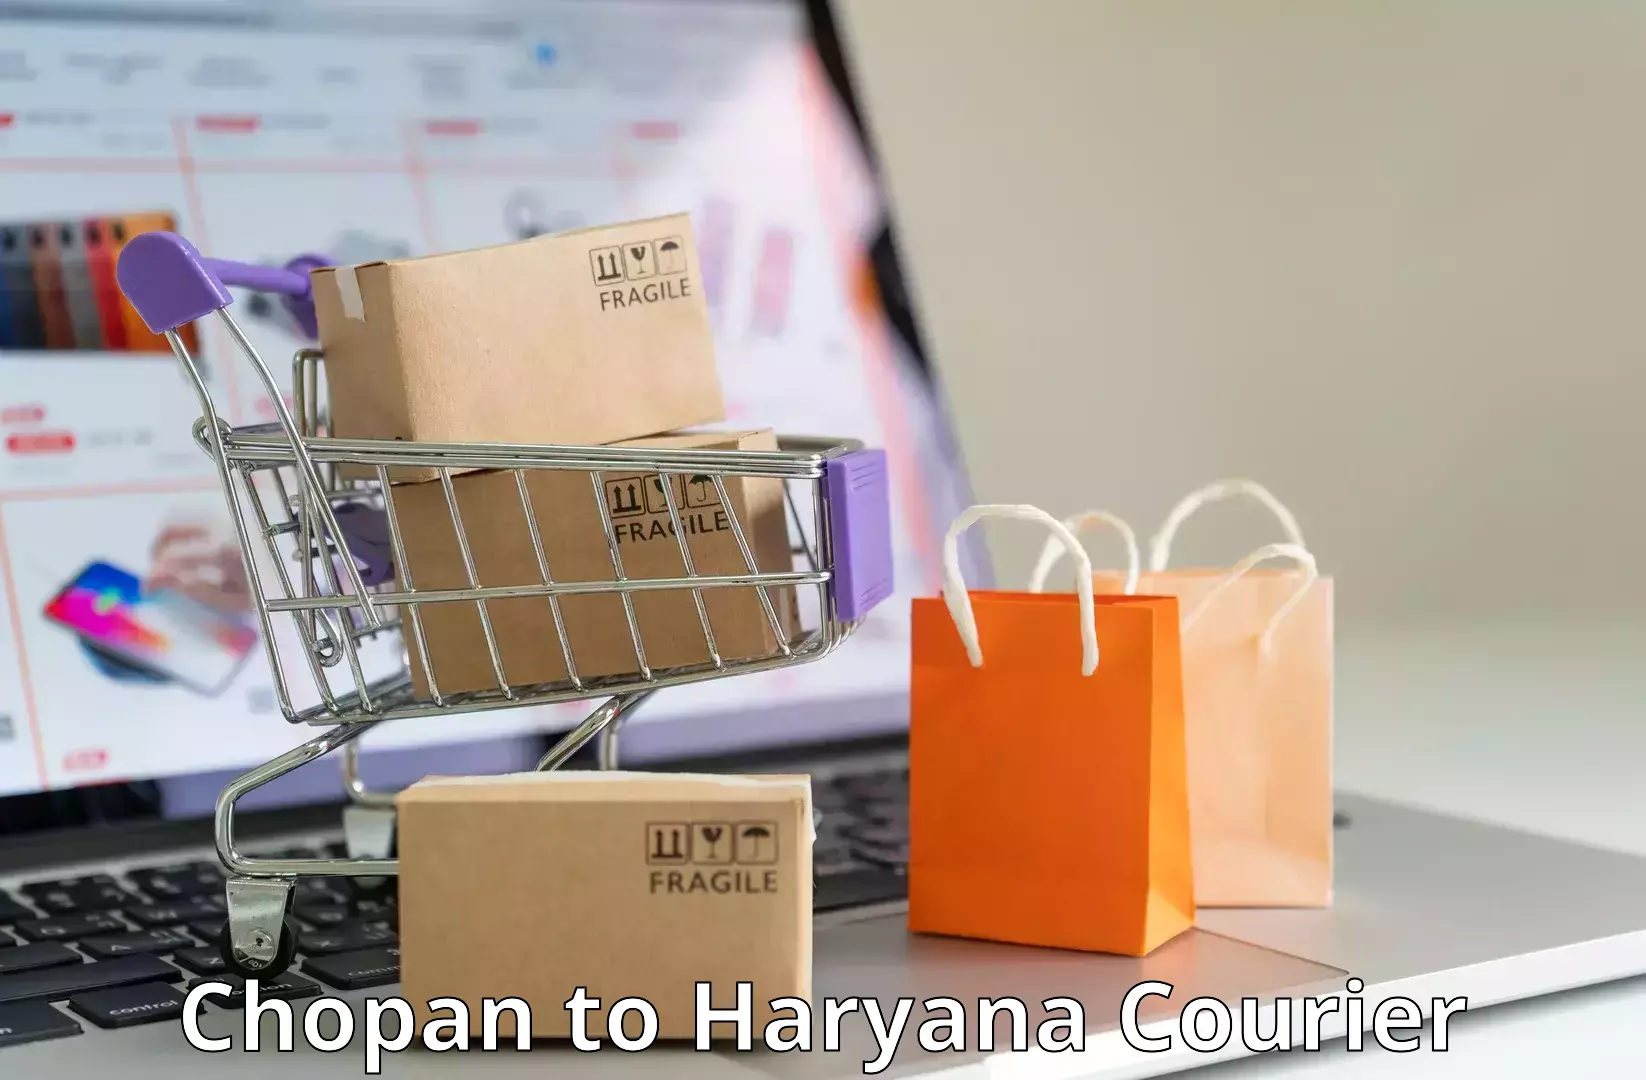 Express courier capabilities Chopan to Chandi Rohtak